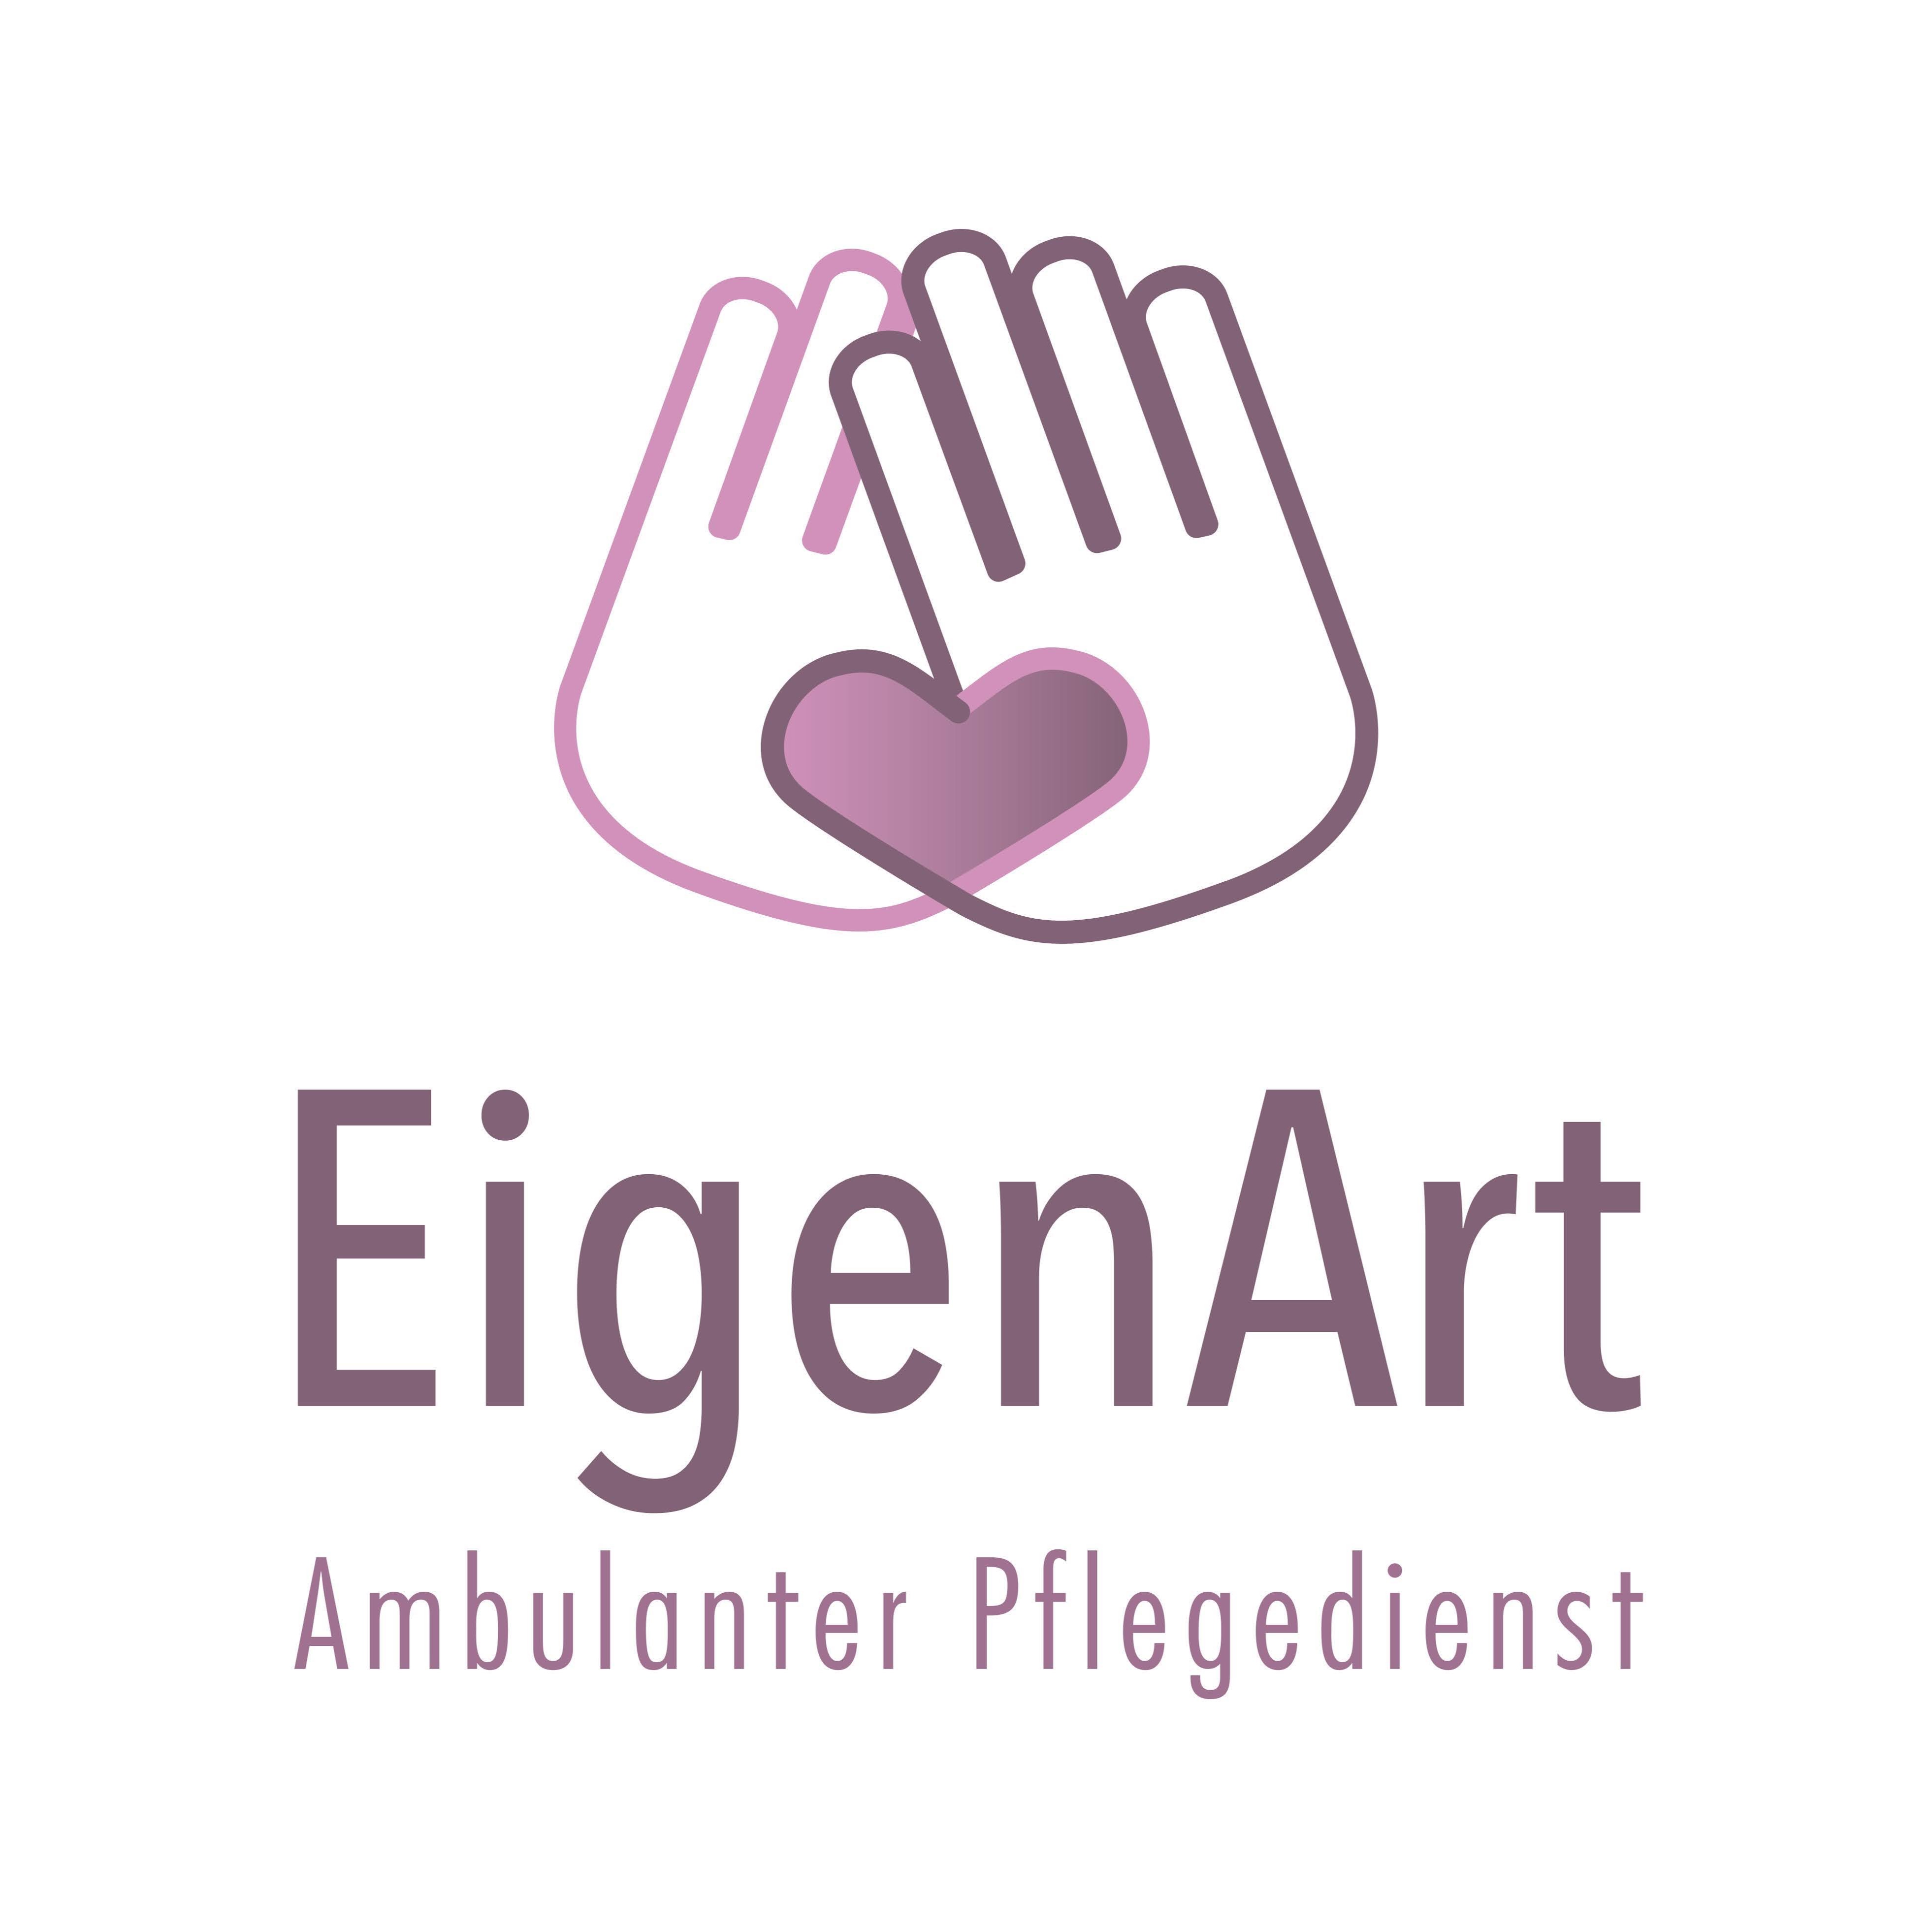 Ambulanter Pflegedienst EigenArt GmbH logo